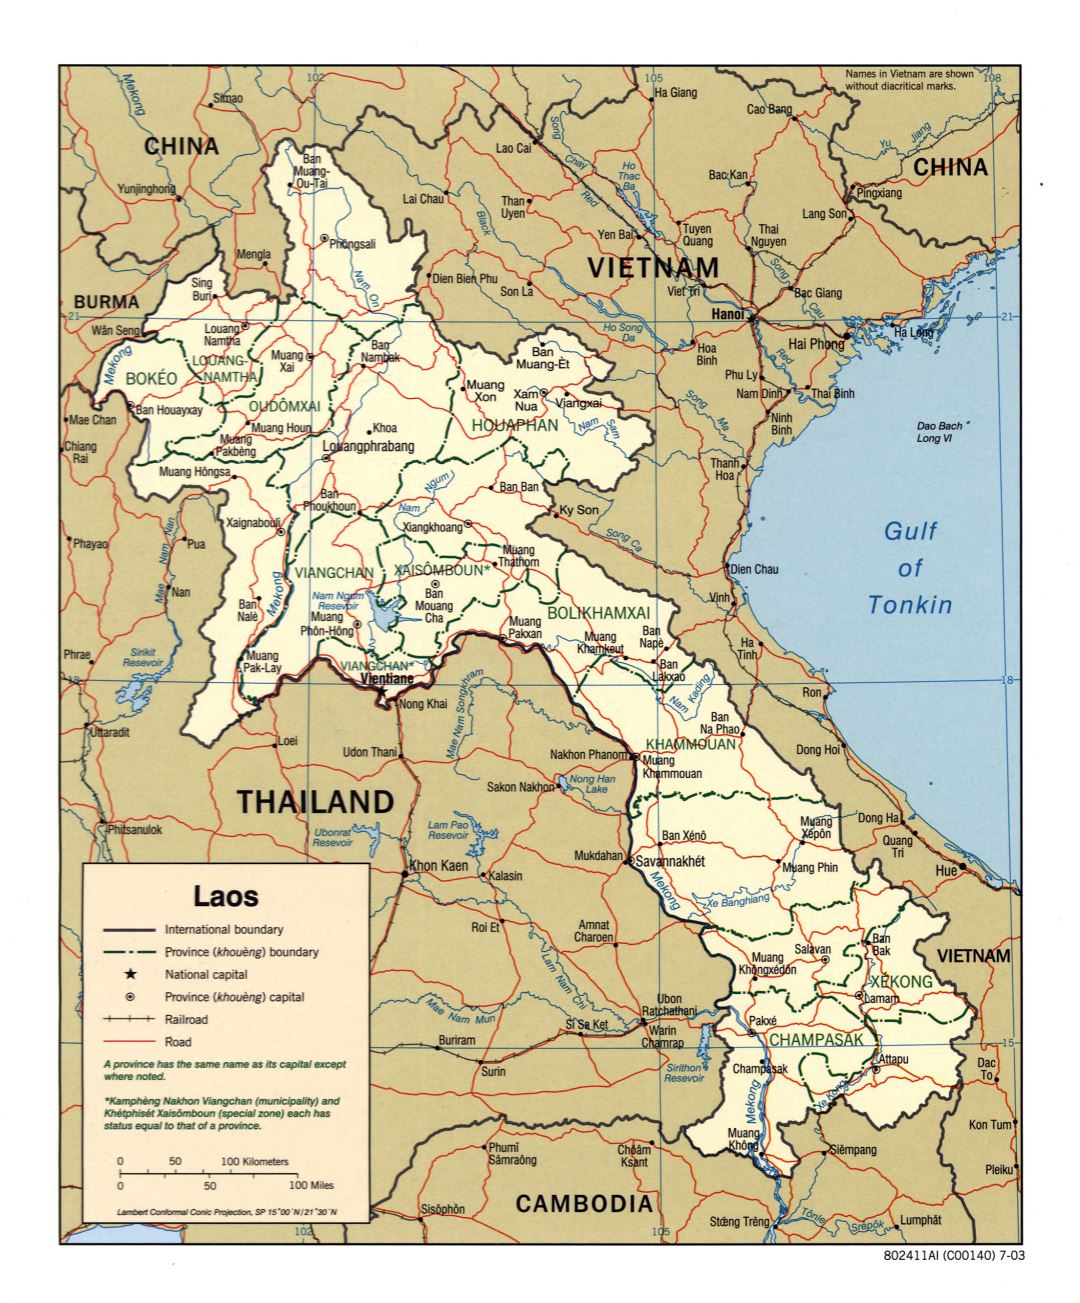 Grande detallado mapa político y administrativo de Laos con carreteras, ferrocarriles y principales ciudades - 2003